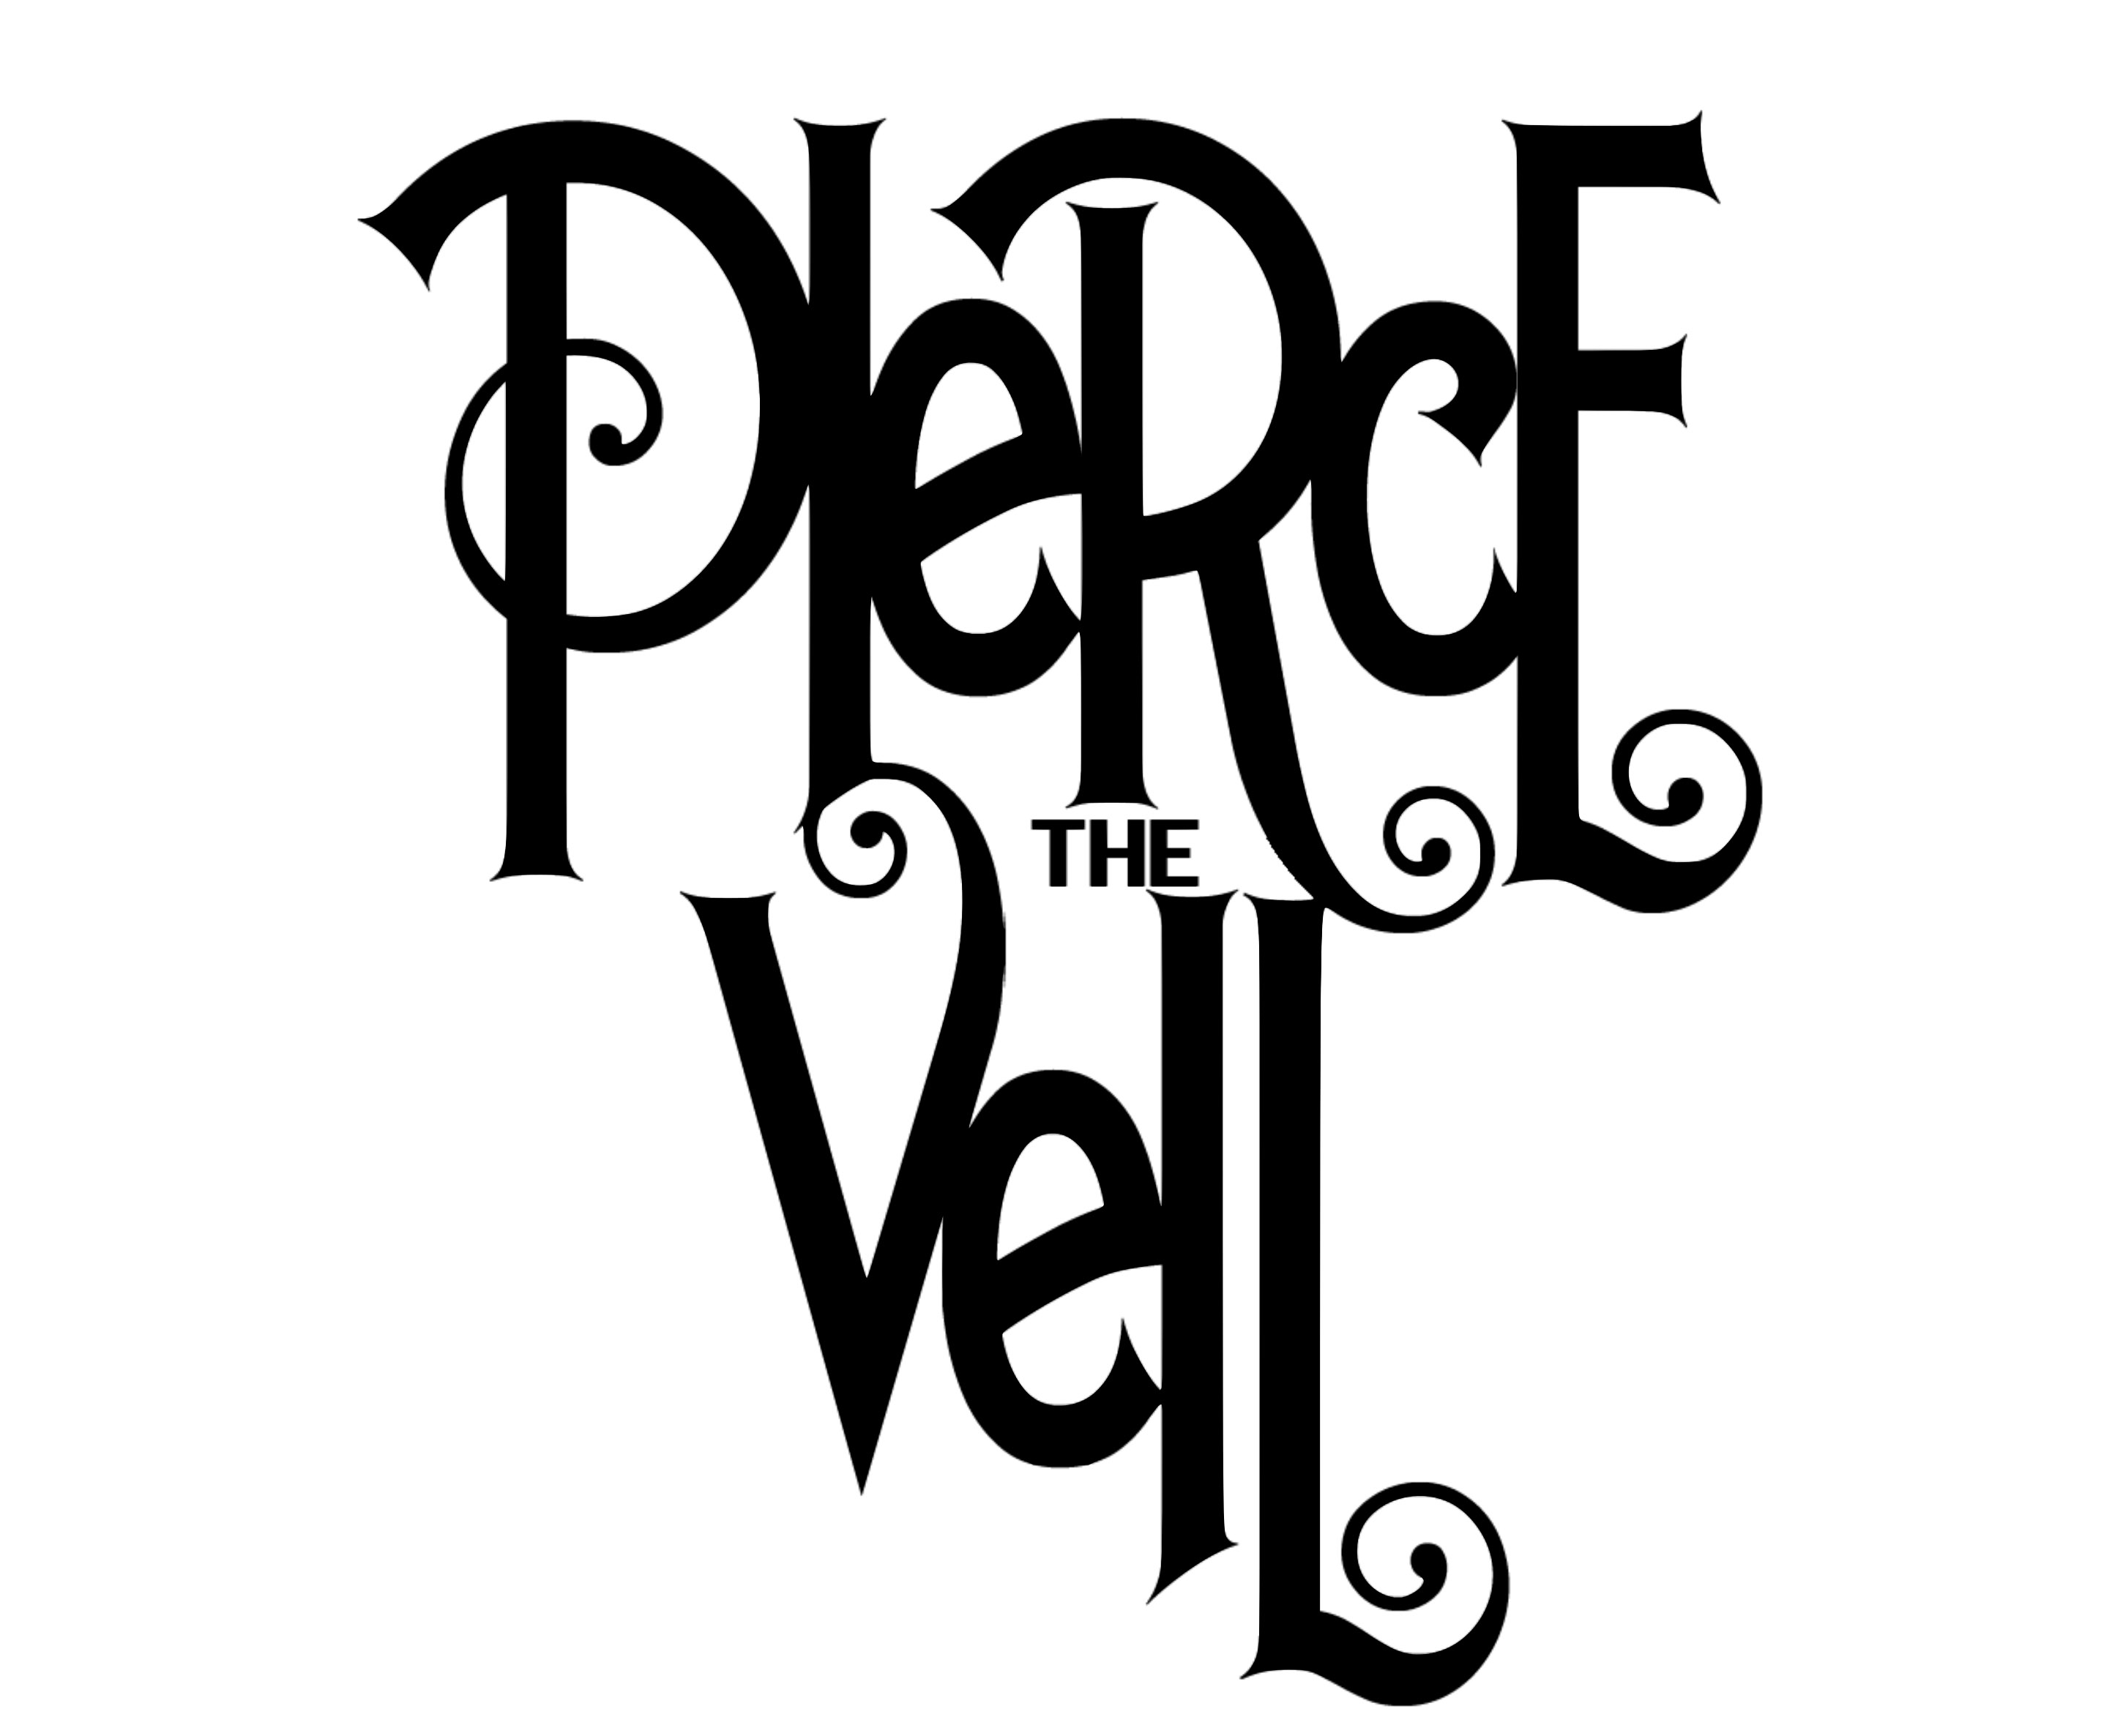 https://1000logos.net/wp-content/uploads/2017/11/Pierce-the-Veil-Logo.jpg